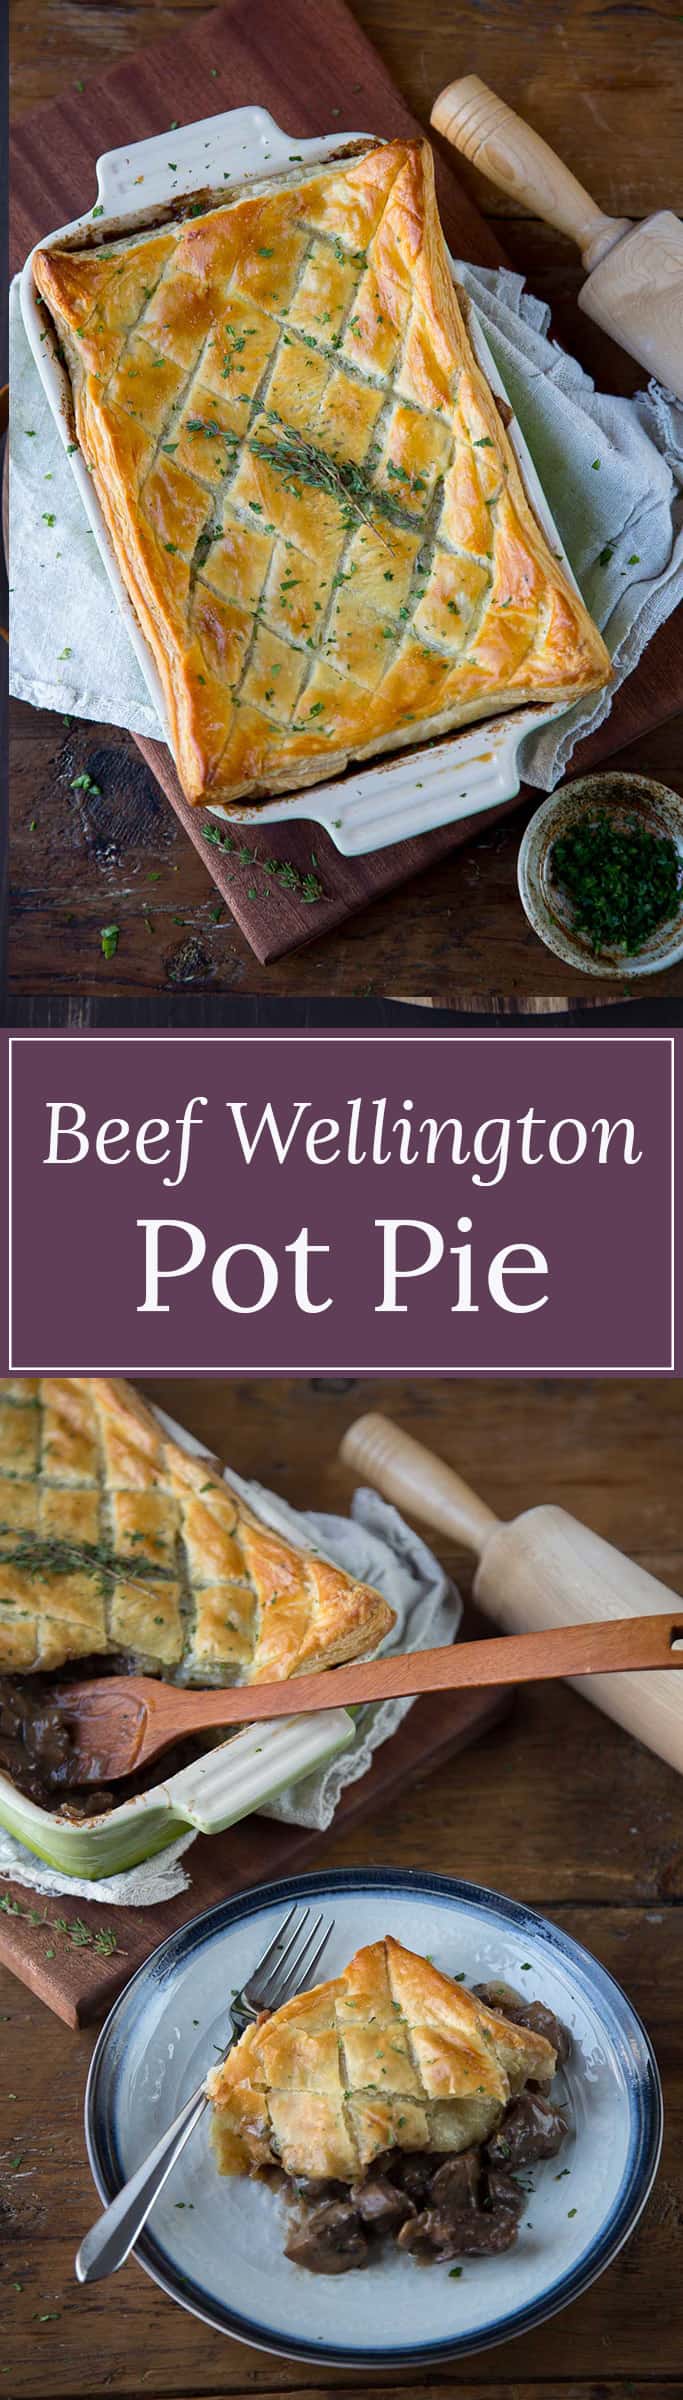 Beef Wellington Pot Pie